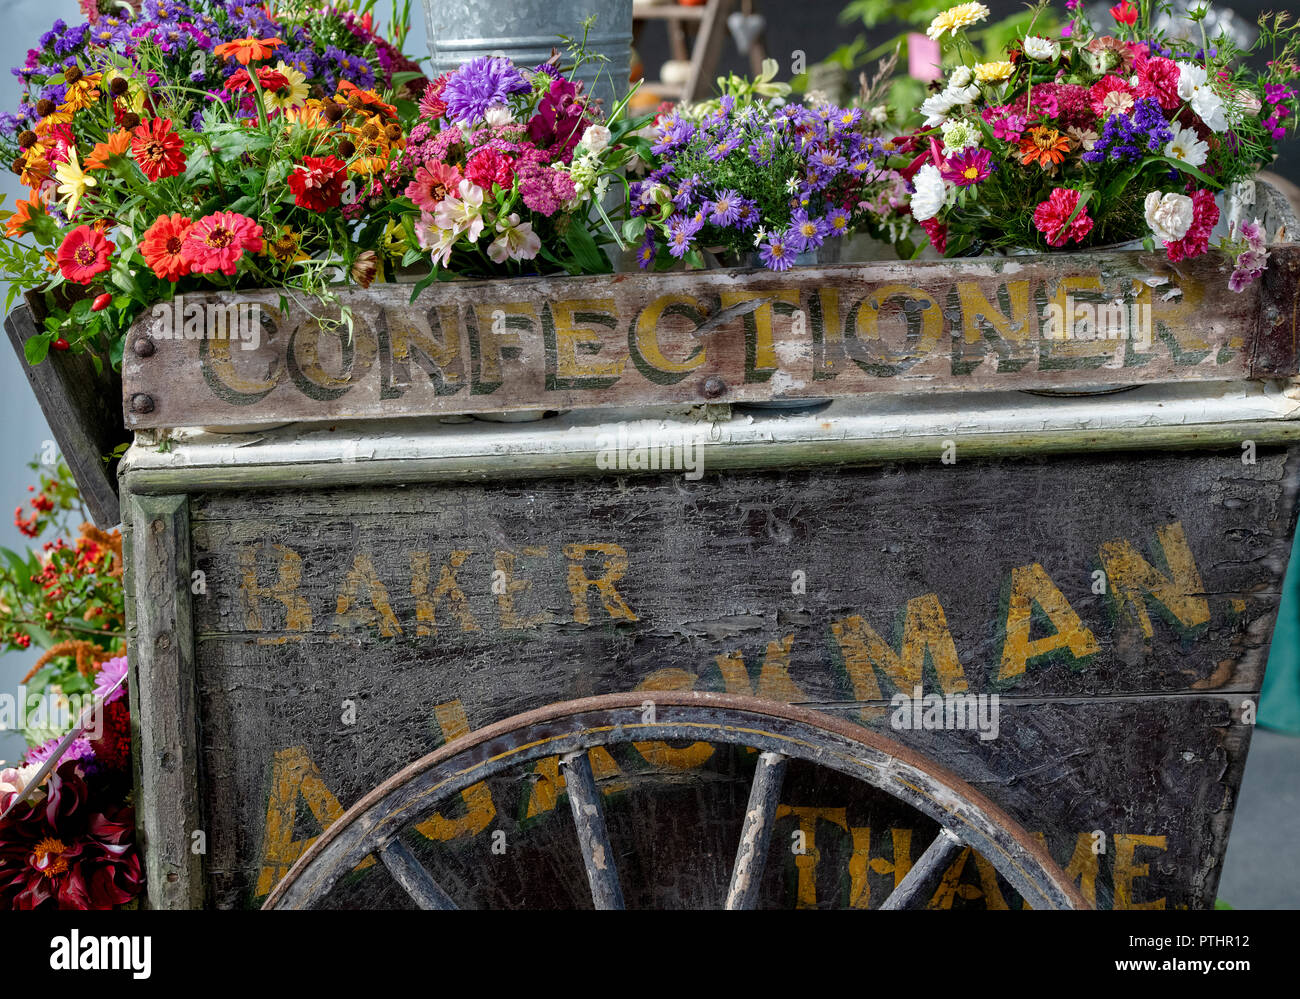 Exposition florale sur une ancienne charrette en bois lors d'un spectacle d'automne. ROYAUME-UNI Banque D'Images